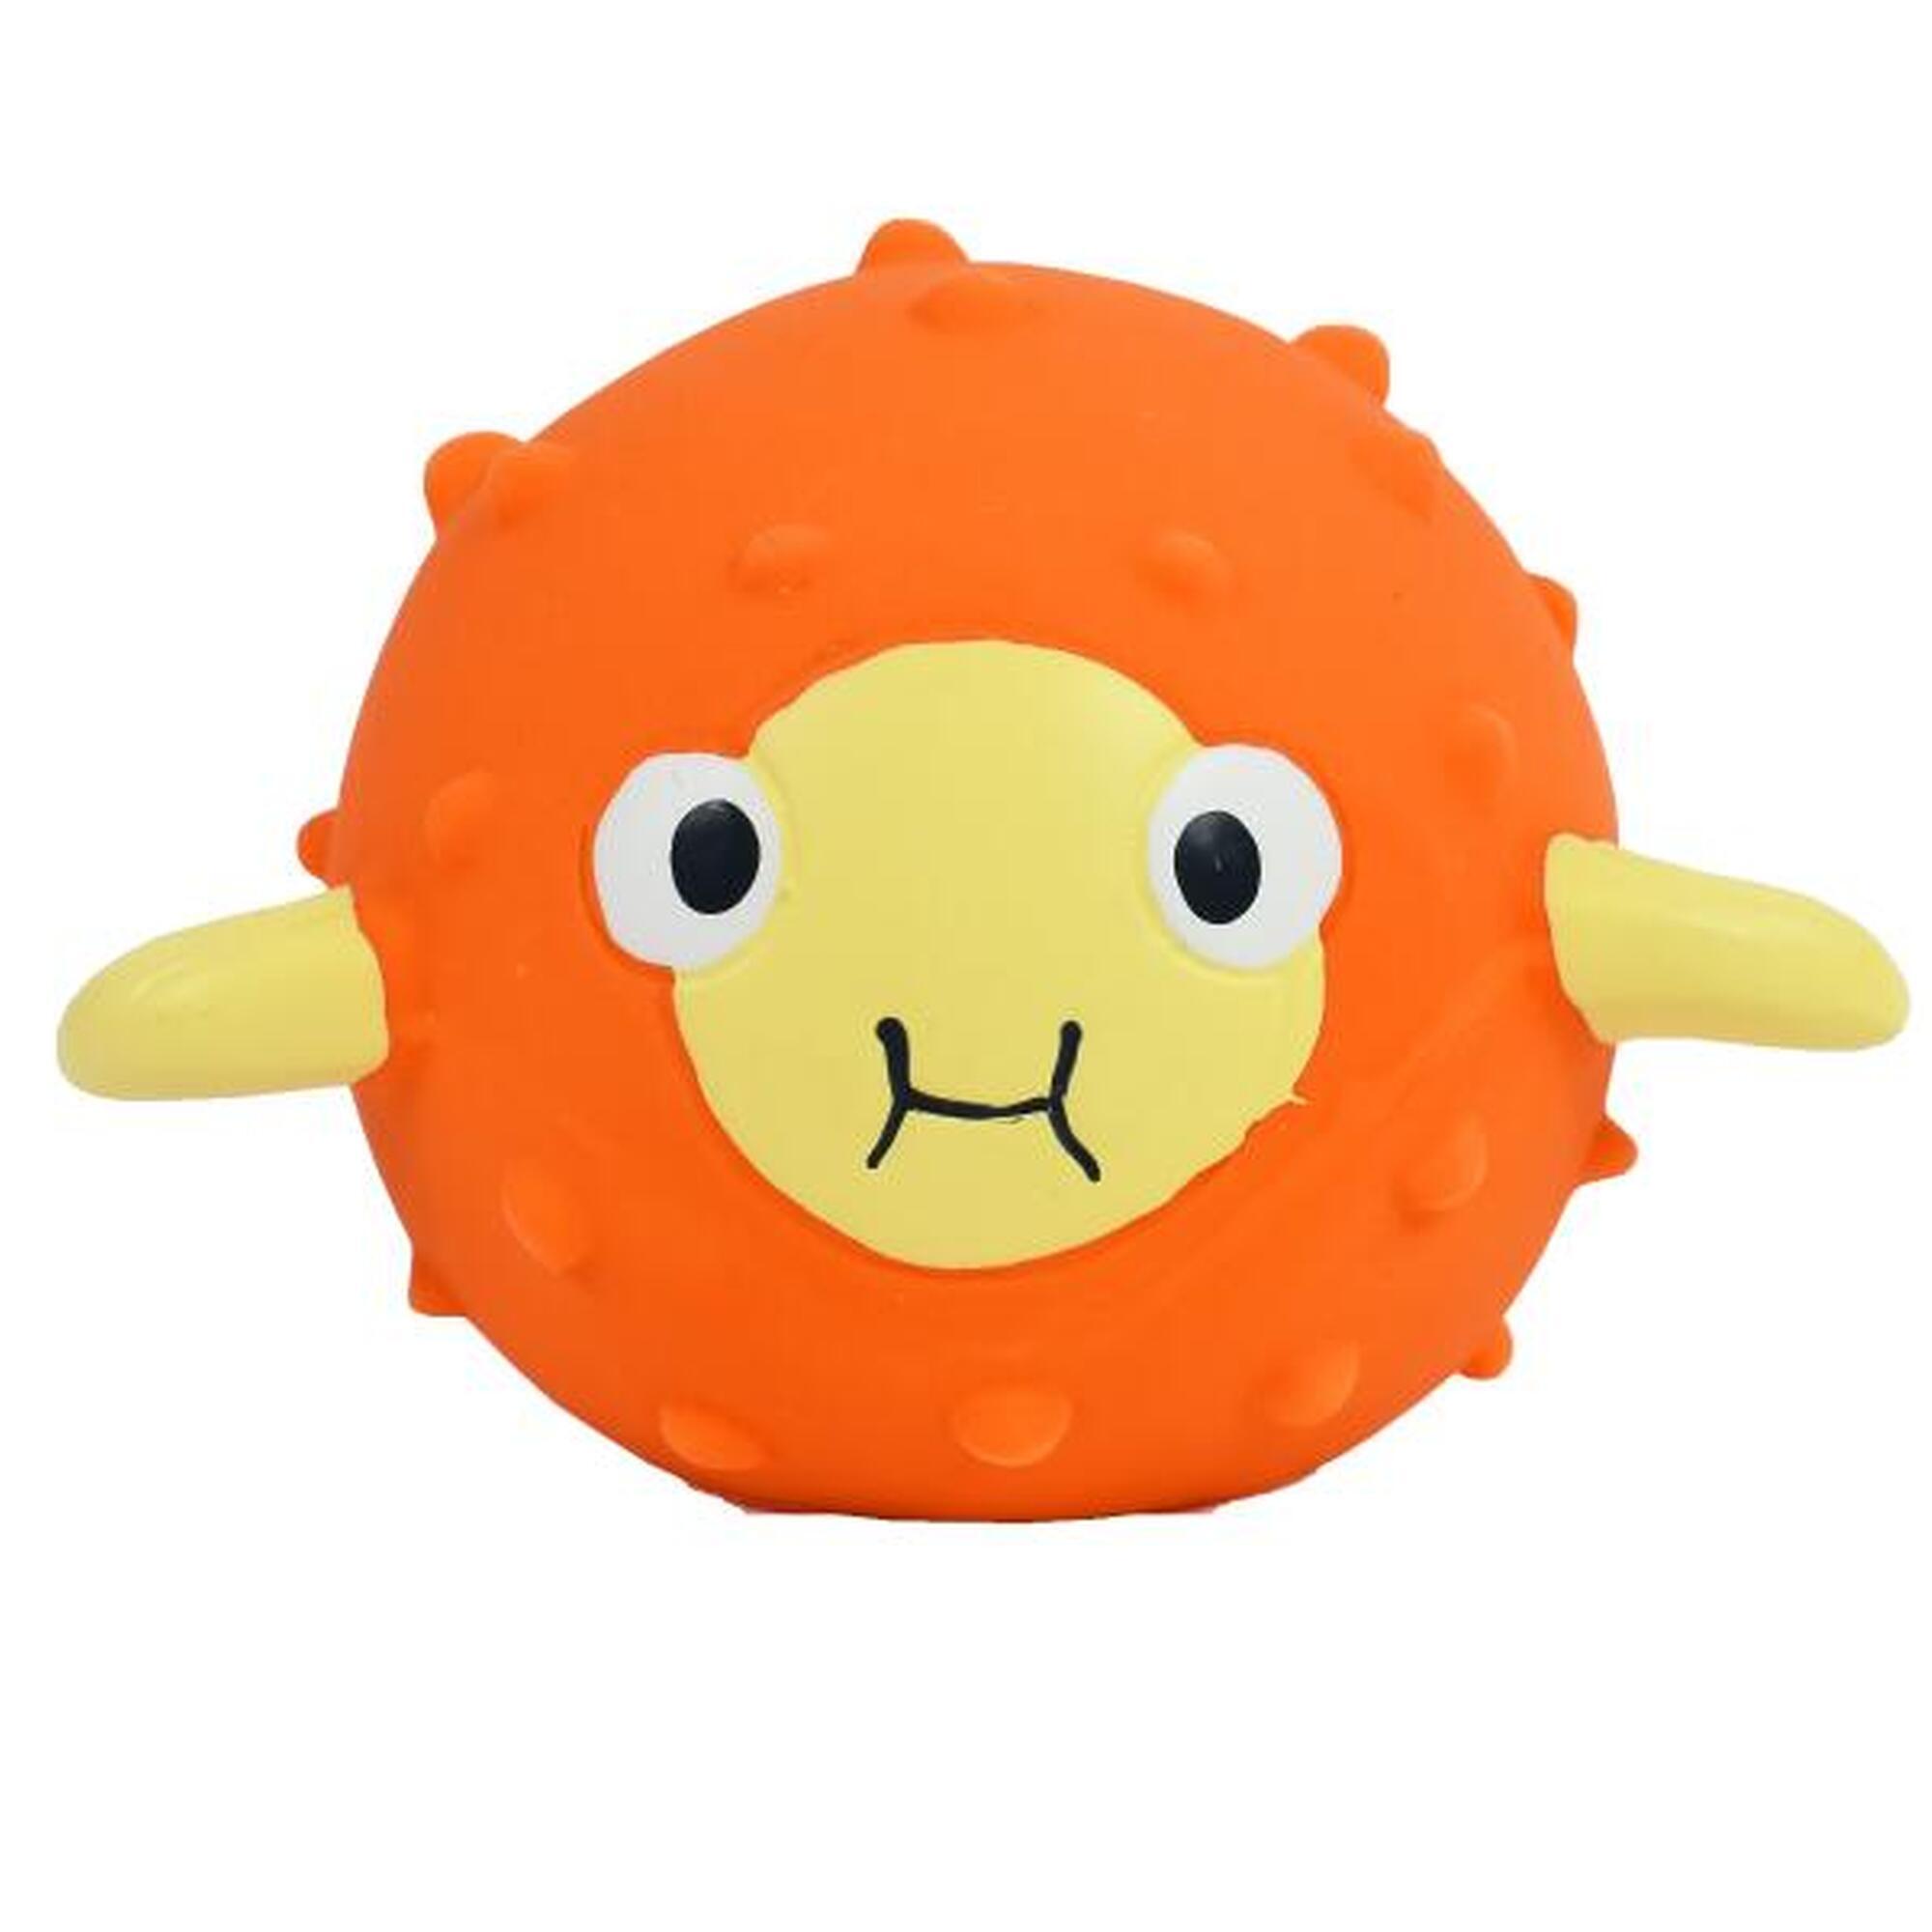 PufferFish Pool & Bath Toy (Non Toxic) - Orange